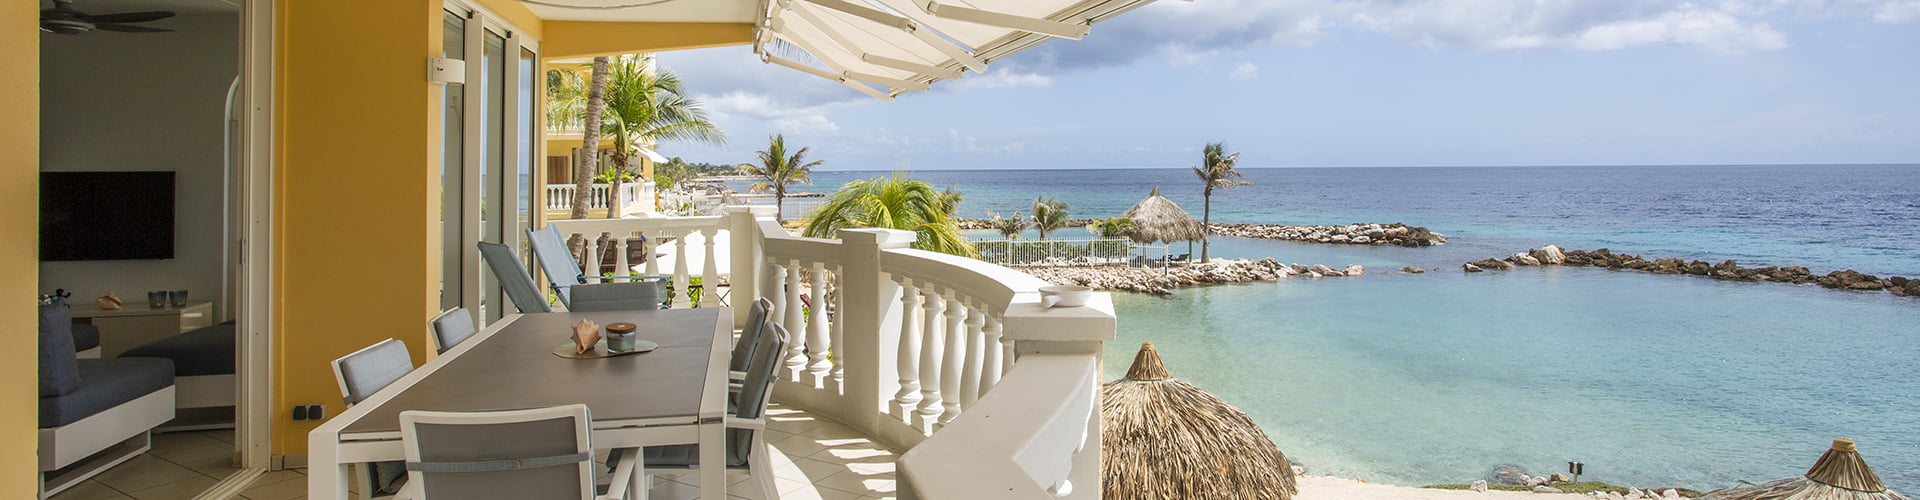 Vakantiehuizen Curacao aan zee